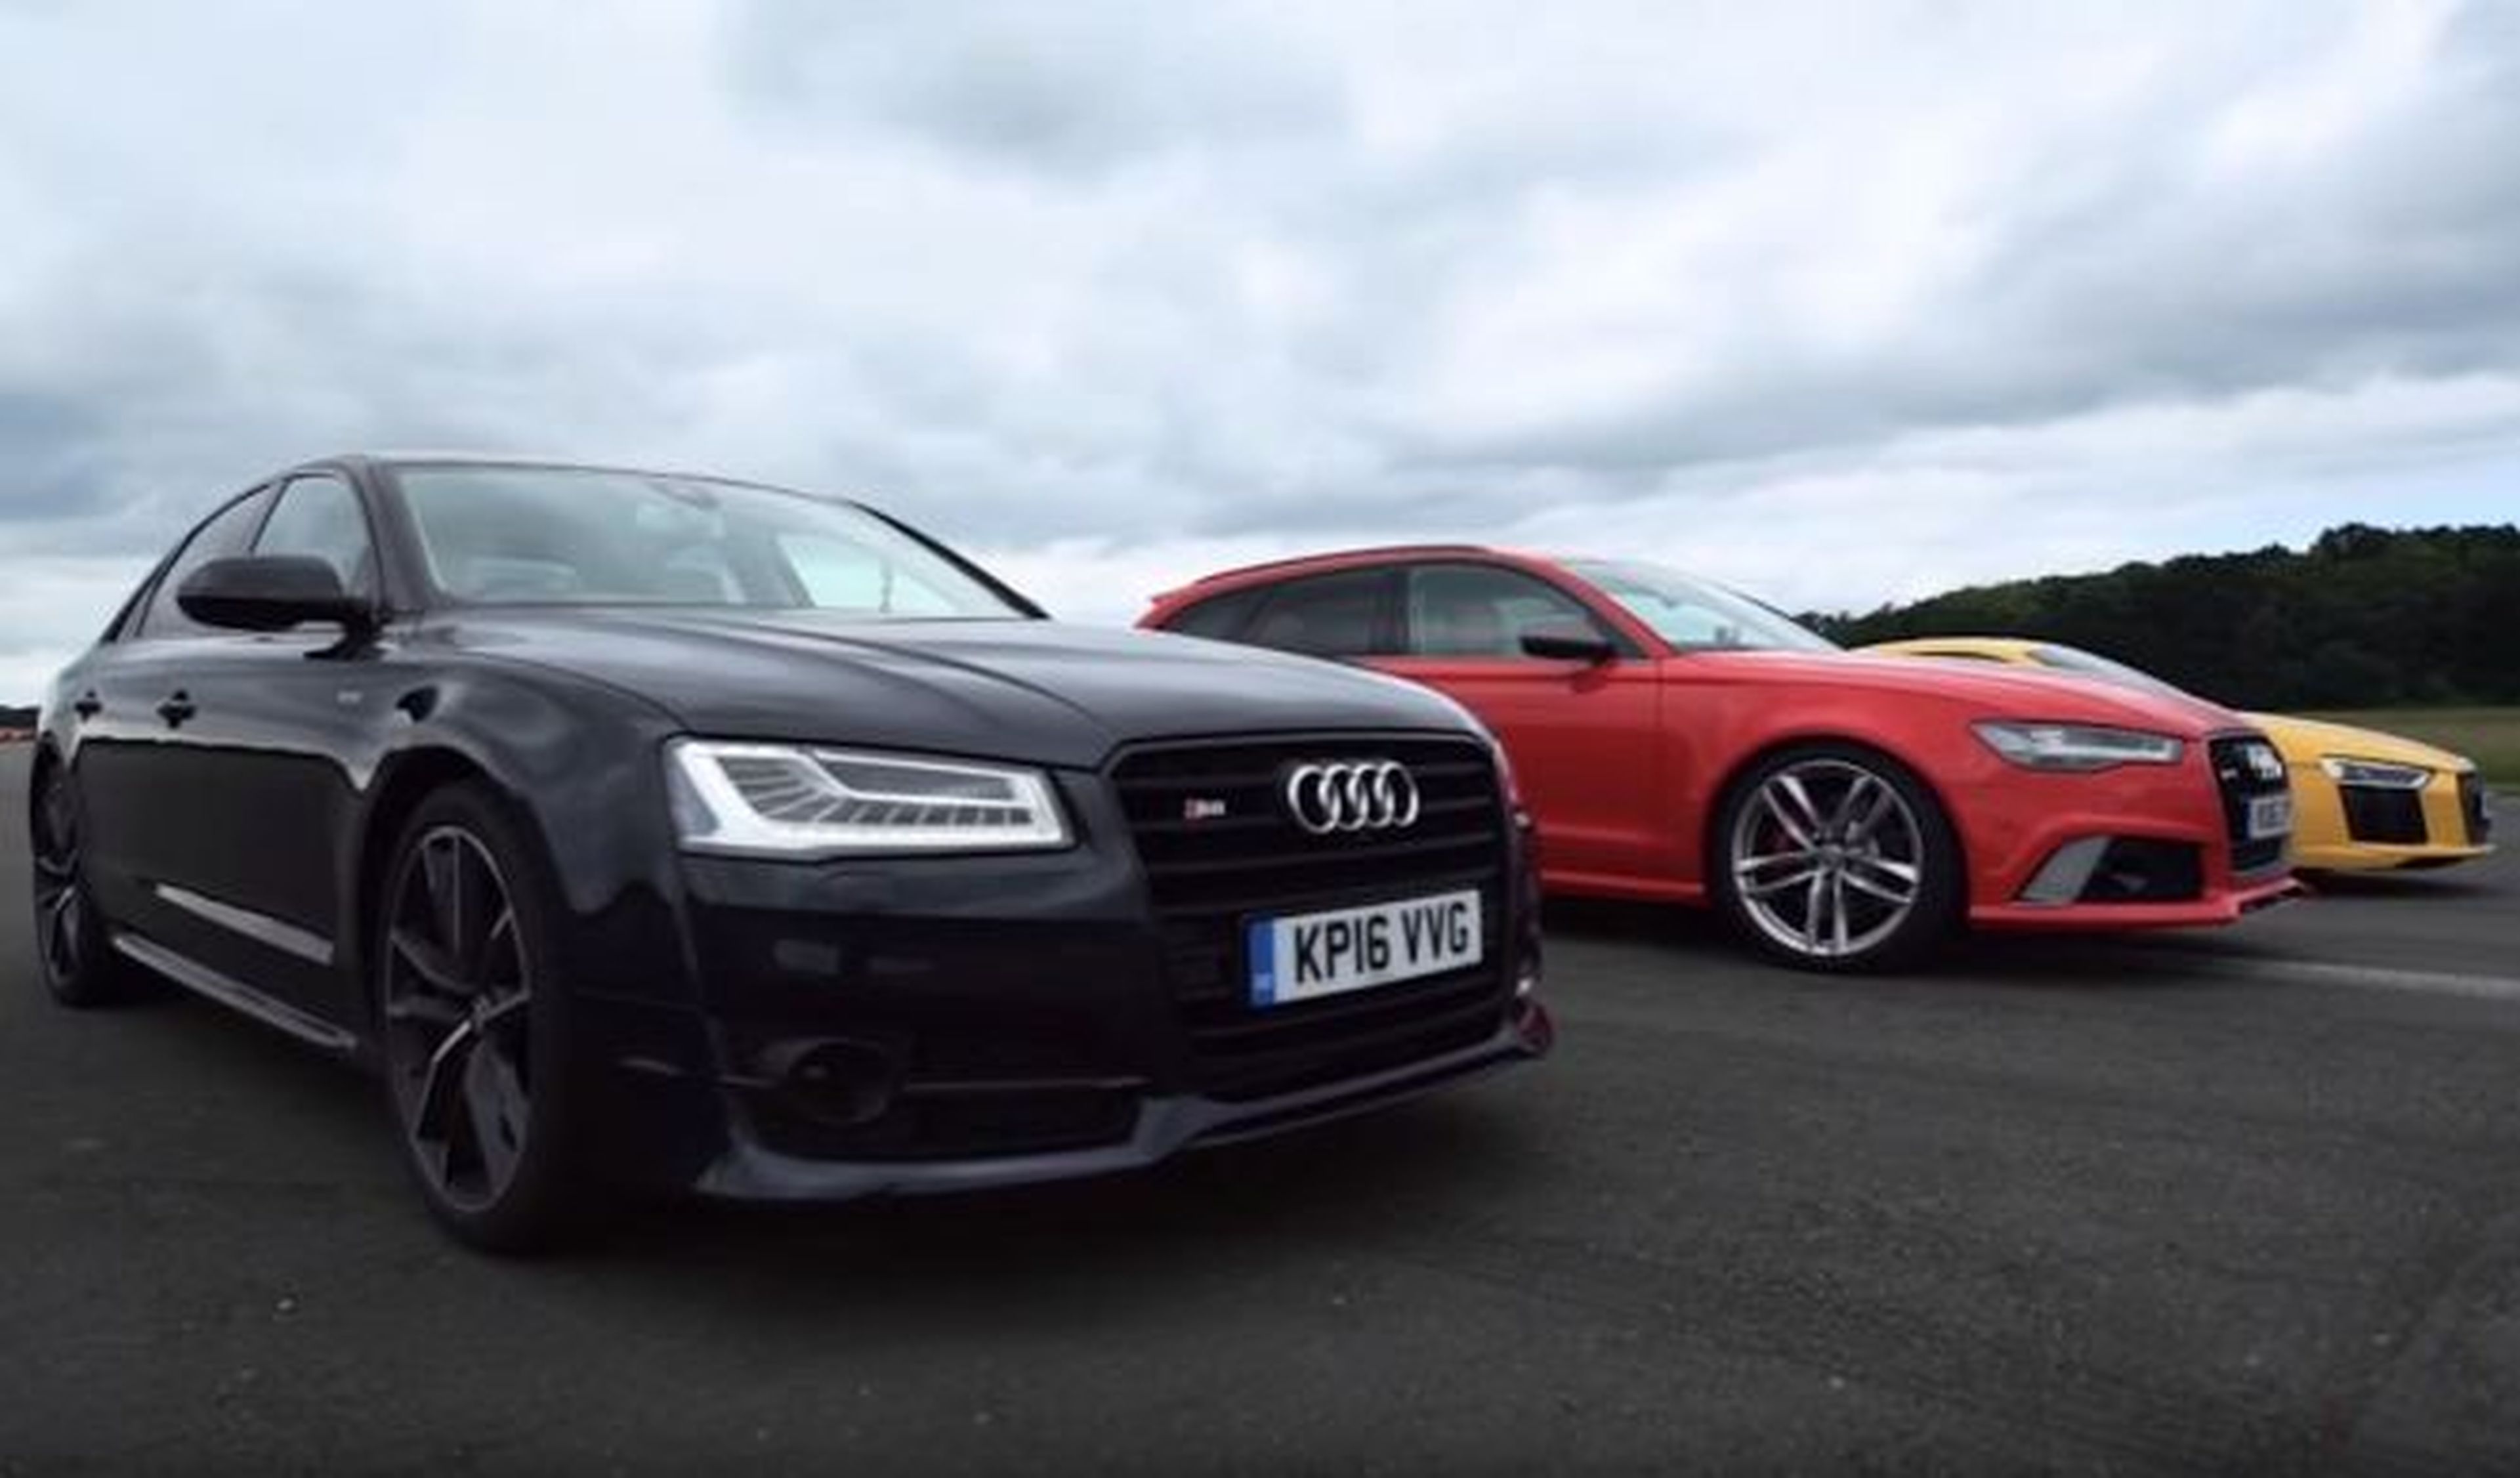 Vídeo: Audi R8 vs Audi RS6 vs Audi S8, ¡batalla interna!